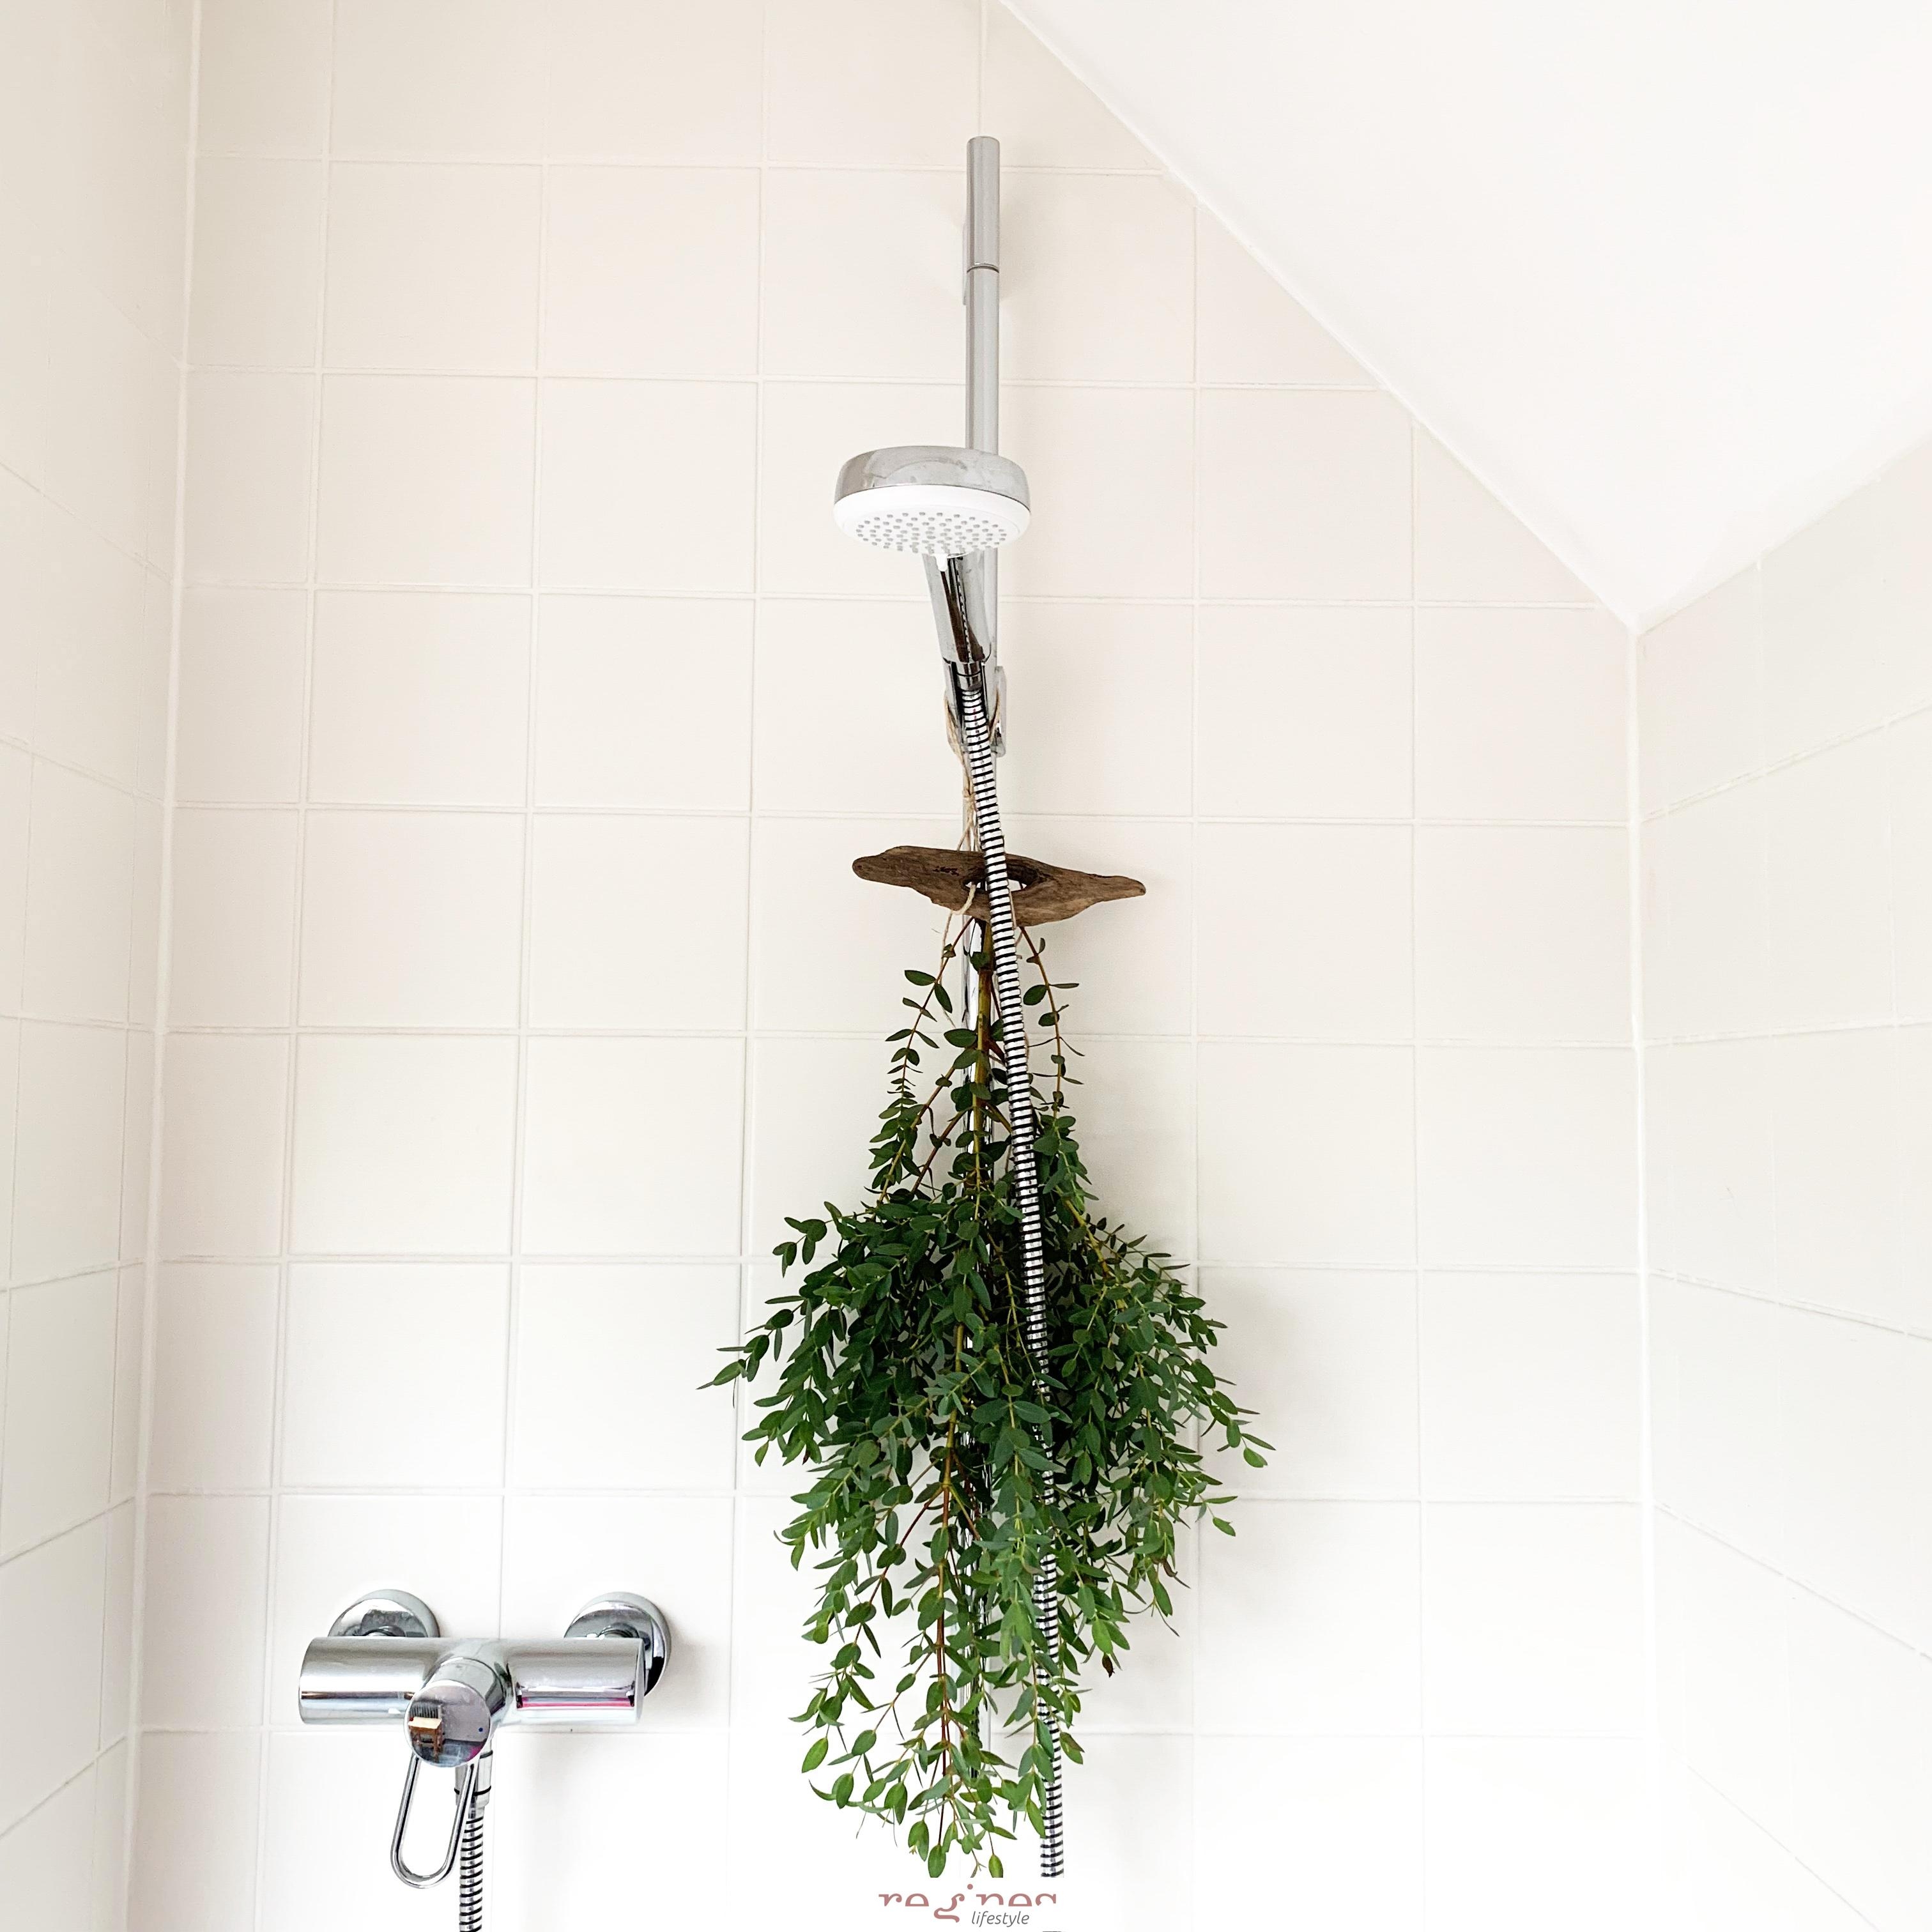 🌿 🇪 🇺 🇰 🇦 🇱 🇾 🇵 🇹 🇺 🇸 🌿
Tolles Detail beim duschen und wundervoll erfrischend ..
#bathroom #badezimmer